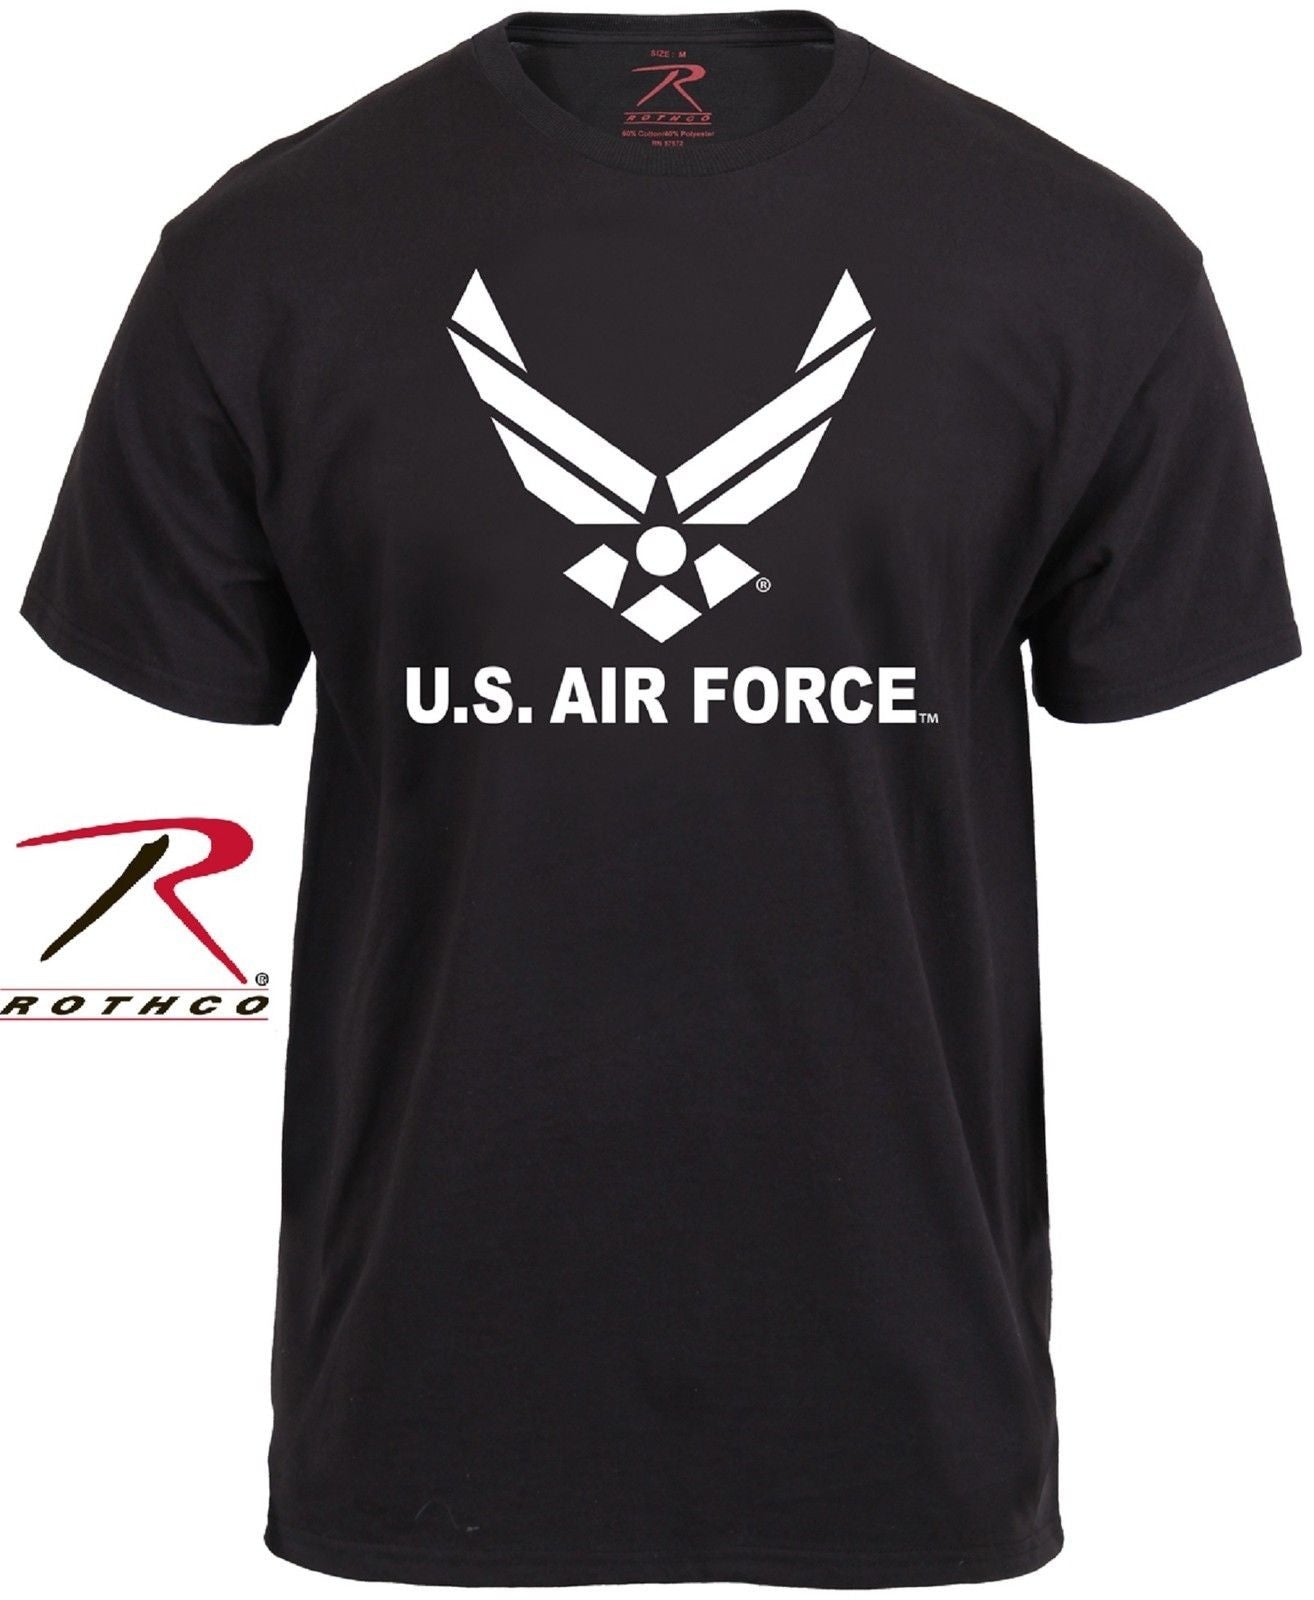 United States Air Force Tee Shirt - Rothco Mens Black USAF TShirt